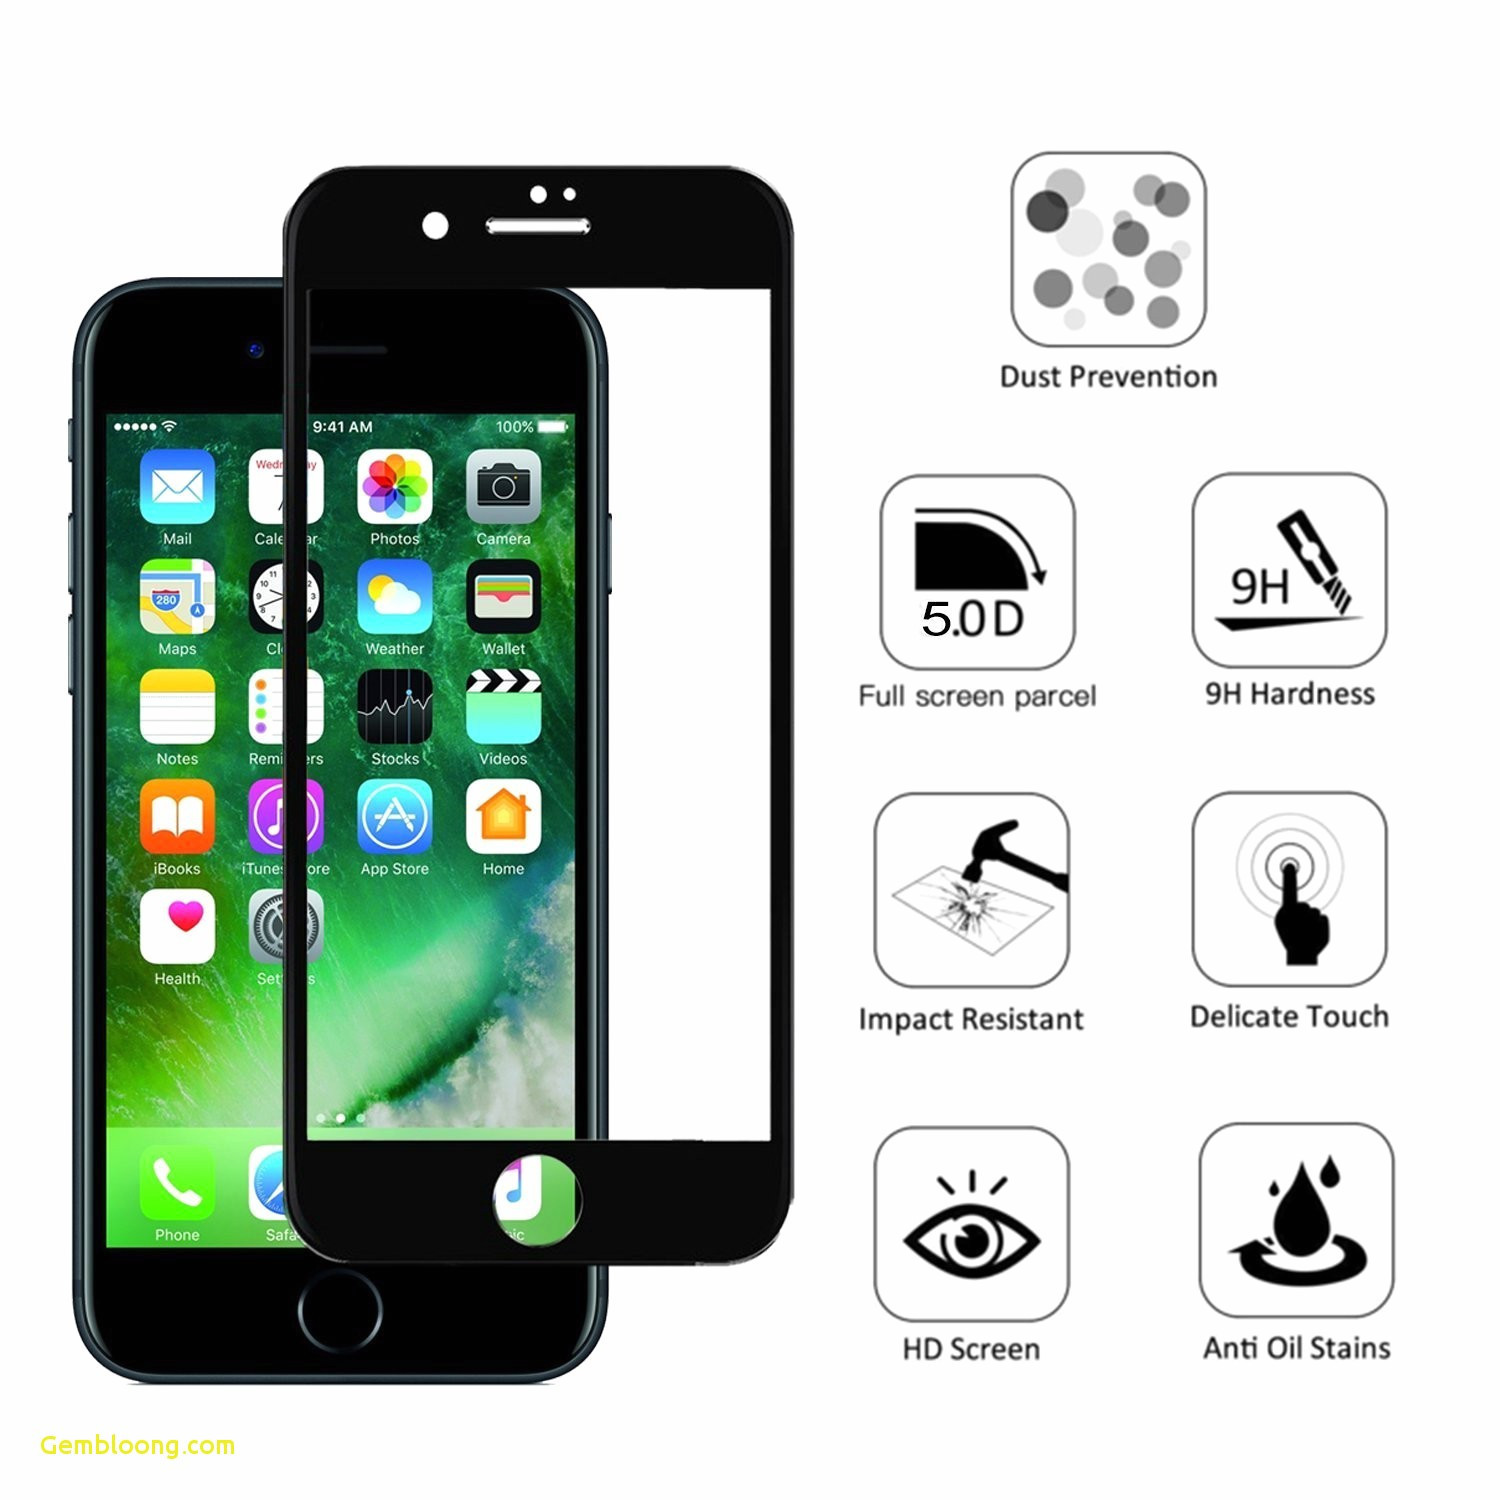 fond d'écran 3 dimensi android,téléphone portable,gadget,dispositif de communication,dispositif de communication portable,téléphone intelligent